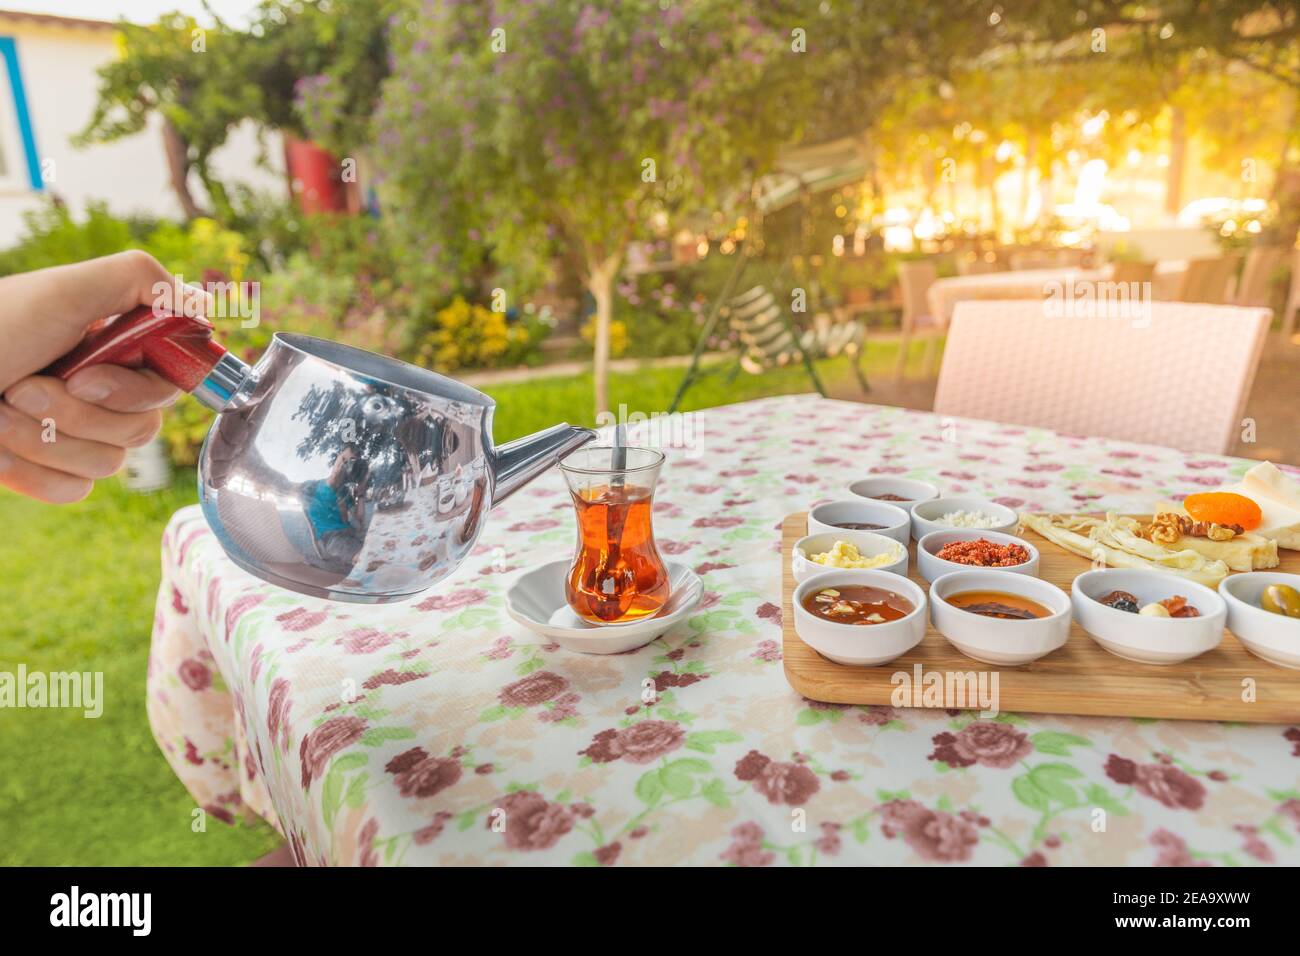 Un uomo versa il tè da una teiera in un tradizionale bicchiere turco sulla terrazza di un ristorante in un pittoresco giardino. Foto Stock